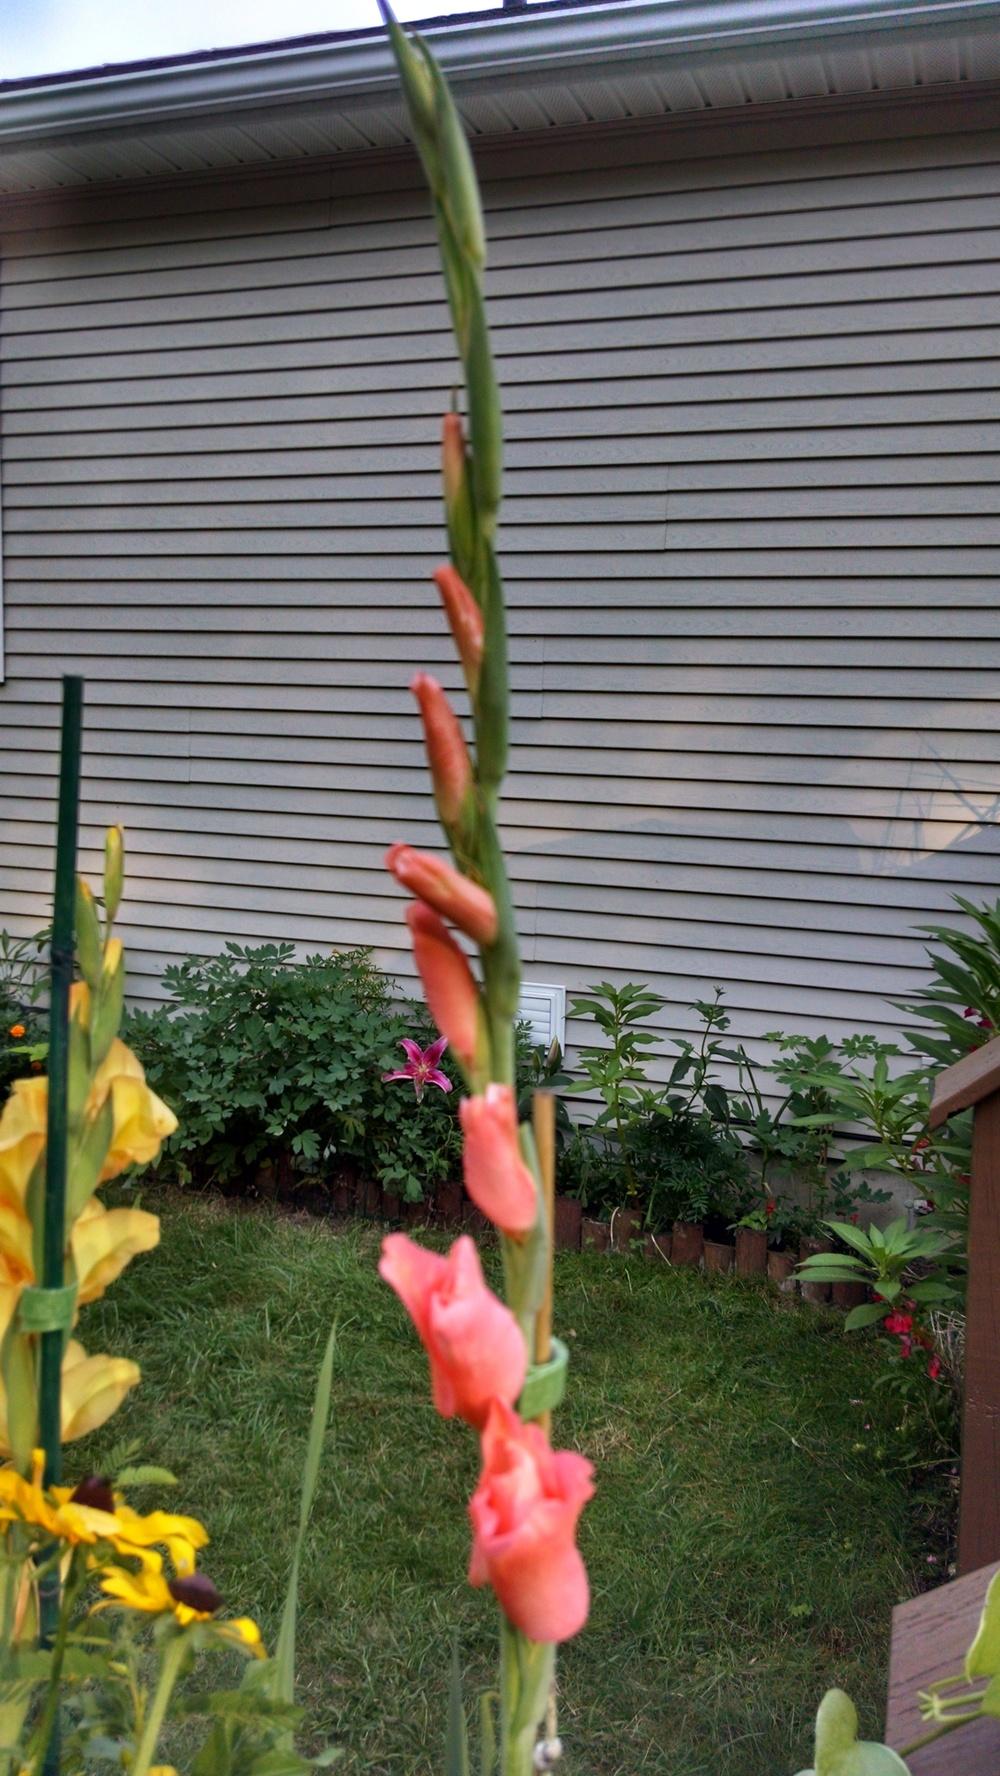 Photo of Gladiola (Gladiolus) uploaded by joannakat